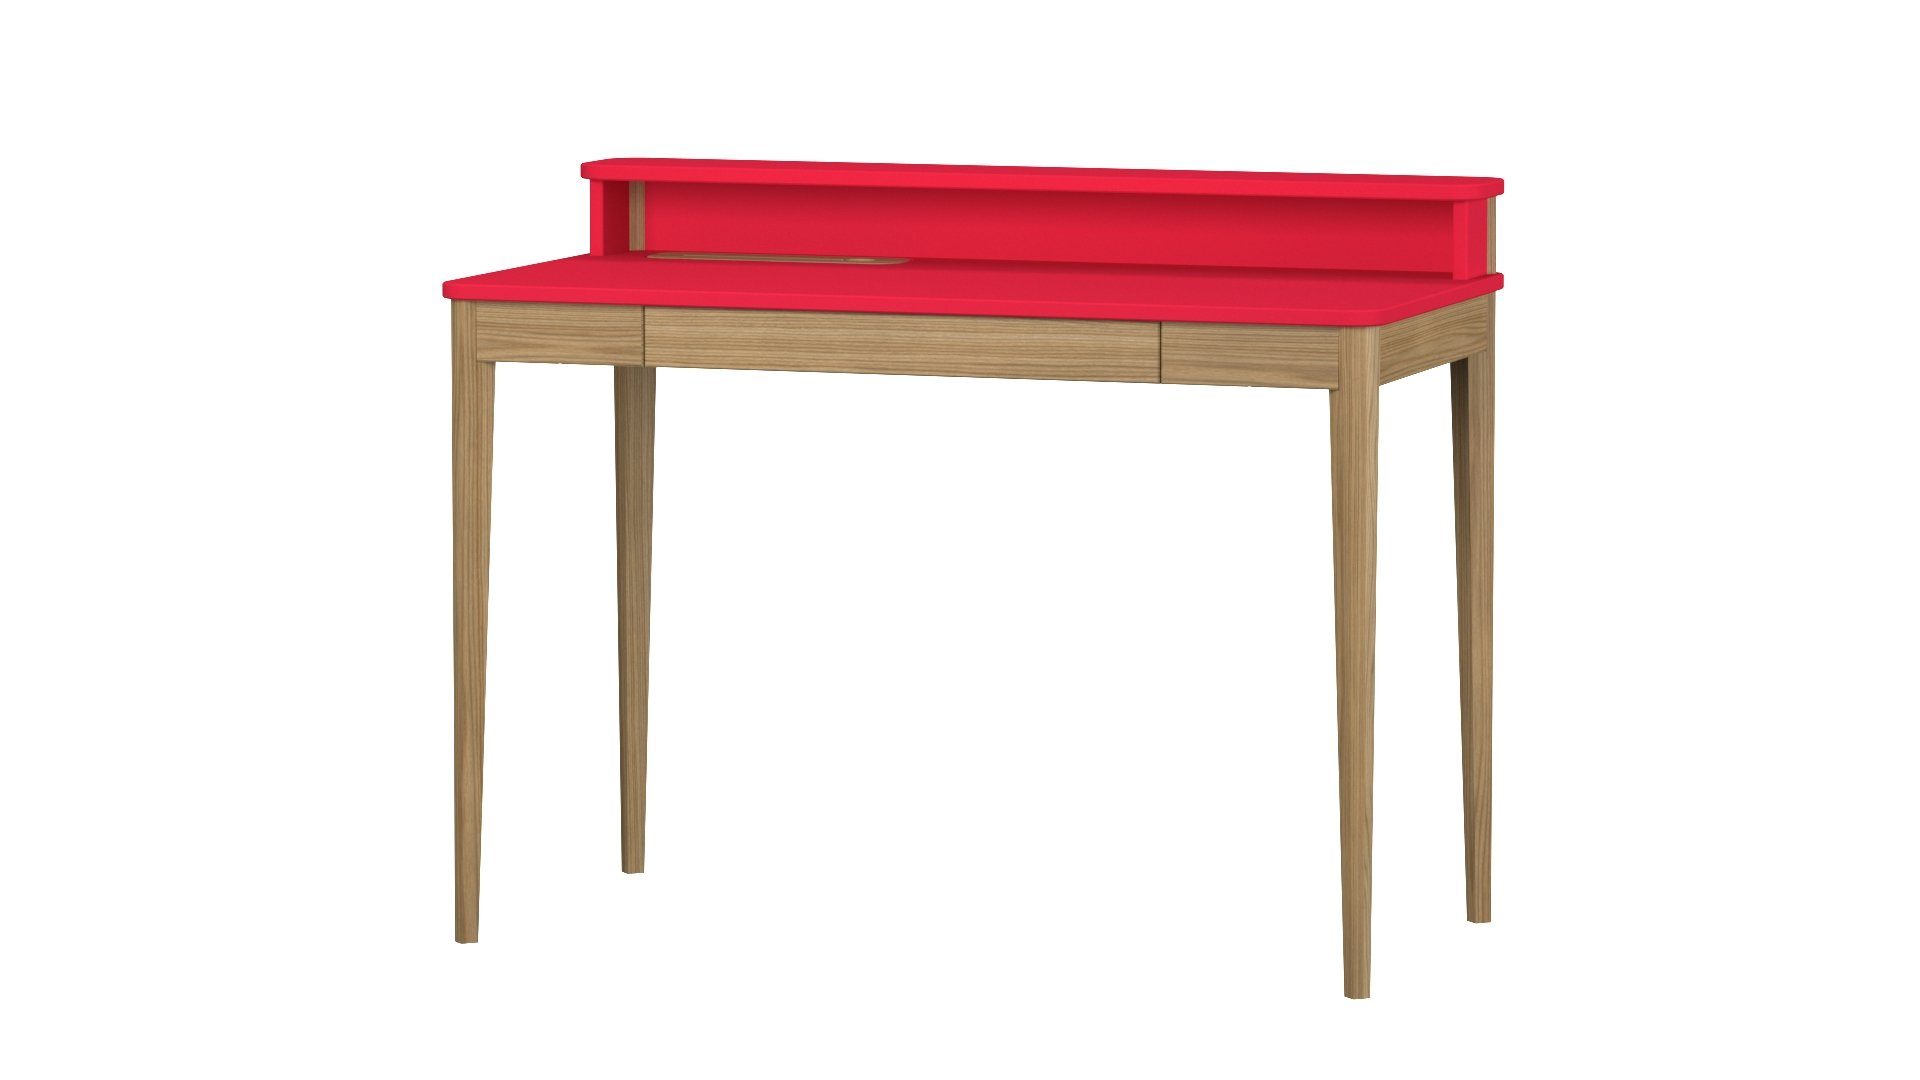 Siblo Schreibtisch - Design Regal Schublade - Eschenholz minimalistisches und (Kinderschreibtisch Ashley - Rot Schublade) - - Moderner Kinderzimmer Ashley mit Regal Kinderschreibtisch und Jugendzimmer mit Schreibtisch - MDF-Platte